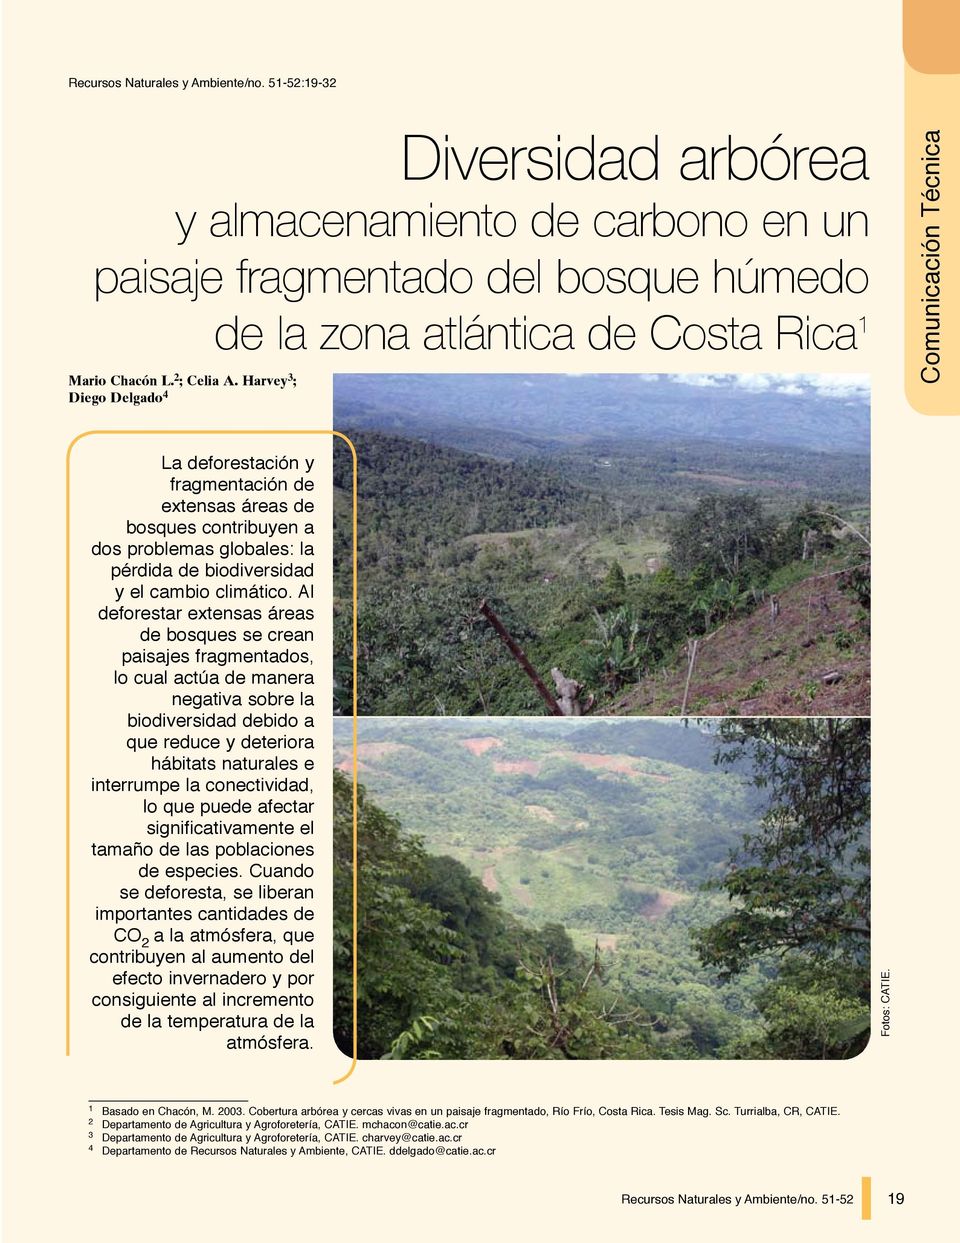 Harvey 3 ; Diego Delgado 4 Comunicación Técnica La deforestación y fragmentación de extensas áreas de bosques contribuyen a dos problemas globales: la pérdida de biodiversidad y el cambio climático.